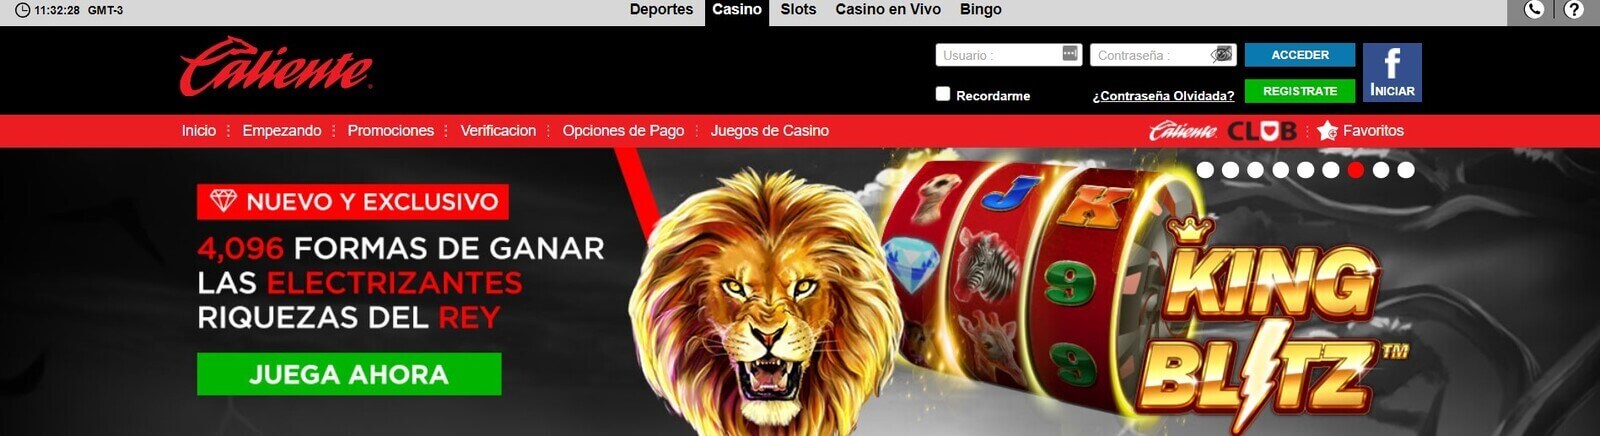 Reseña de casino Caliente online   Juega a los mejores juegos de casino Caliente🔥 en México